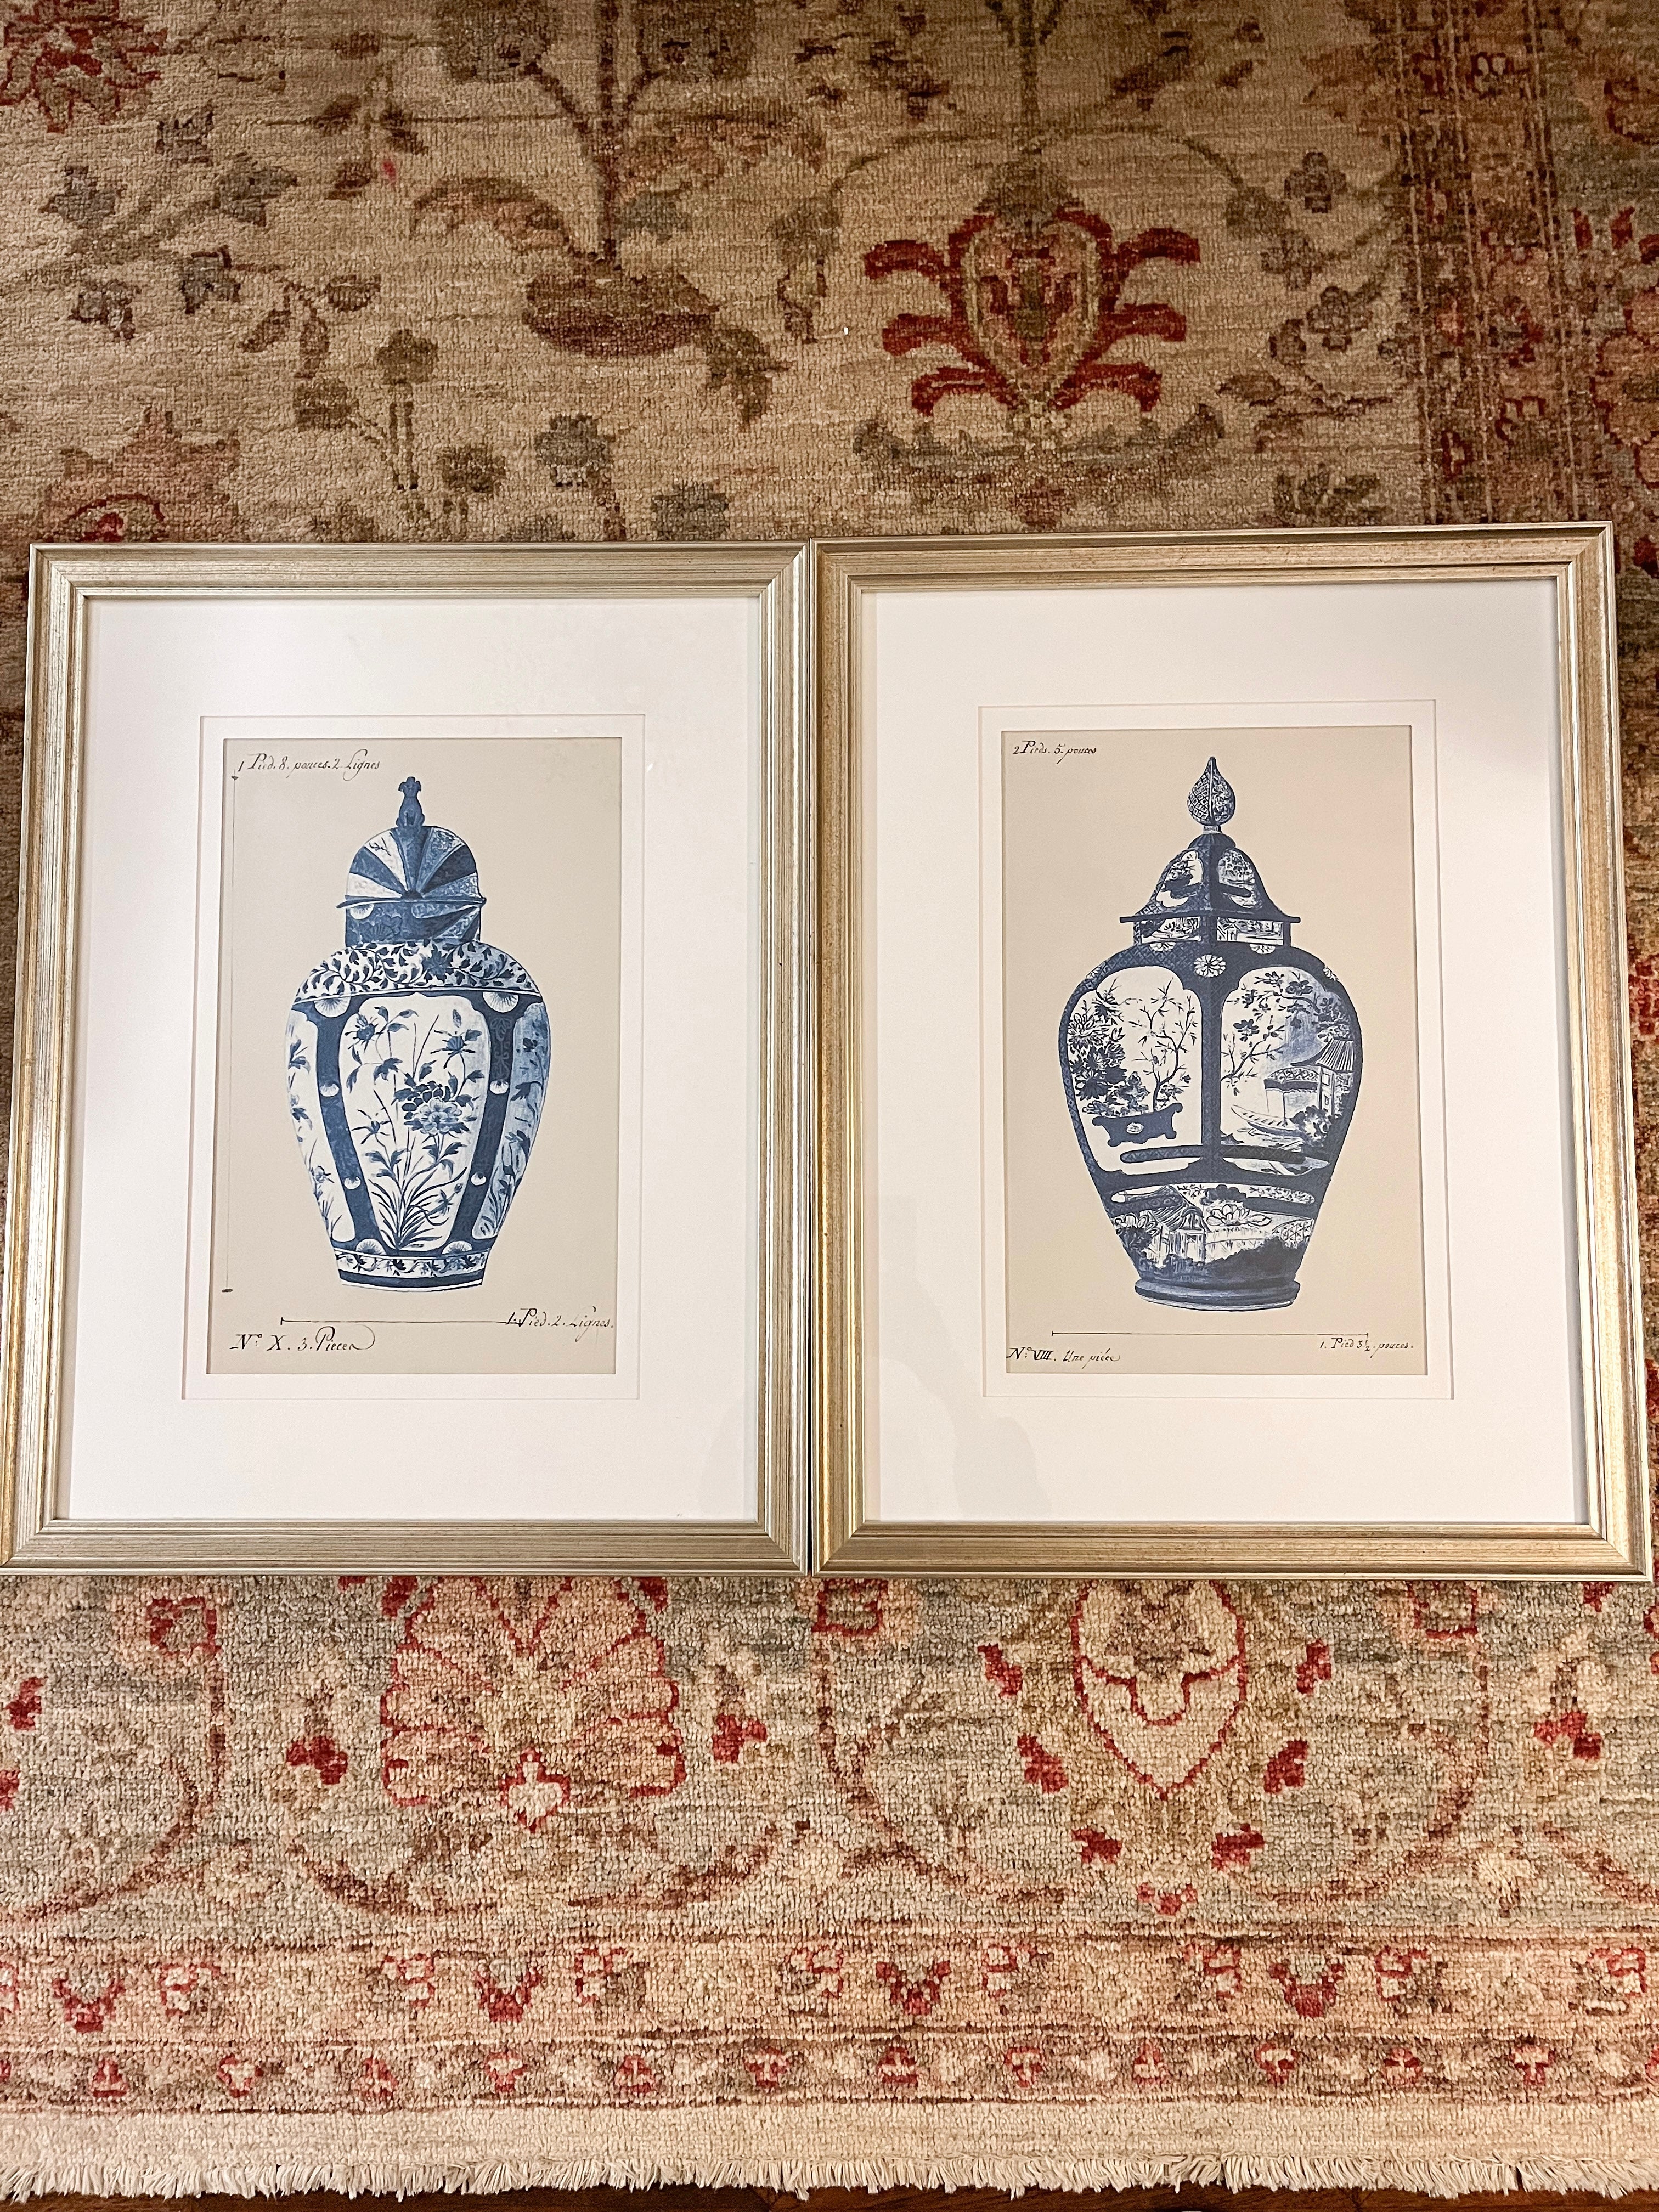 Pair of Framed Blue and White Vases Prints, 17”x22”